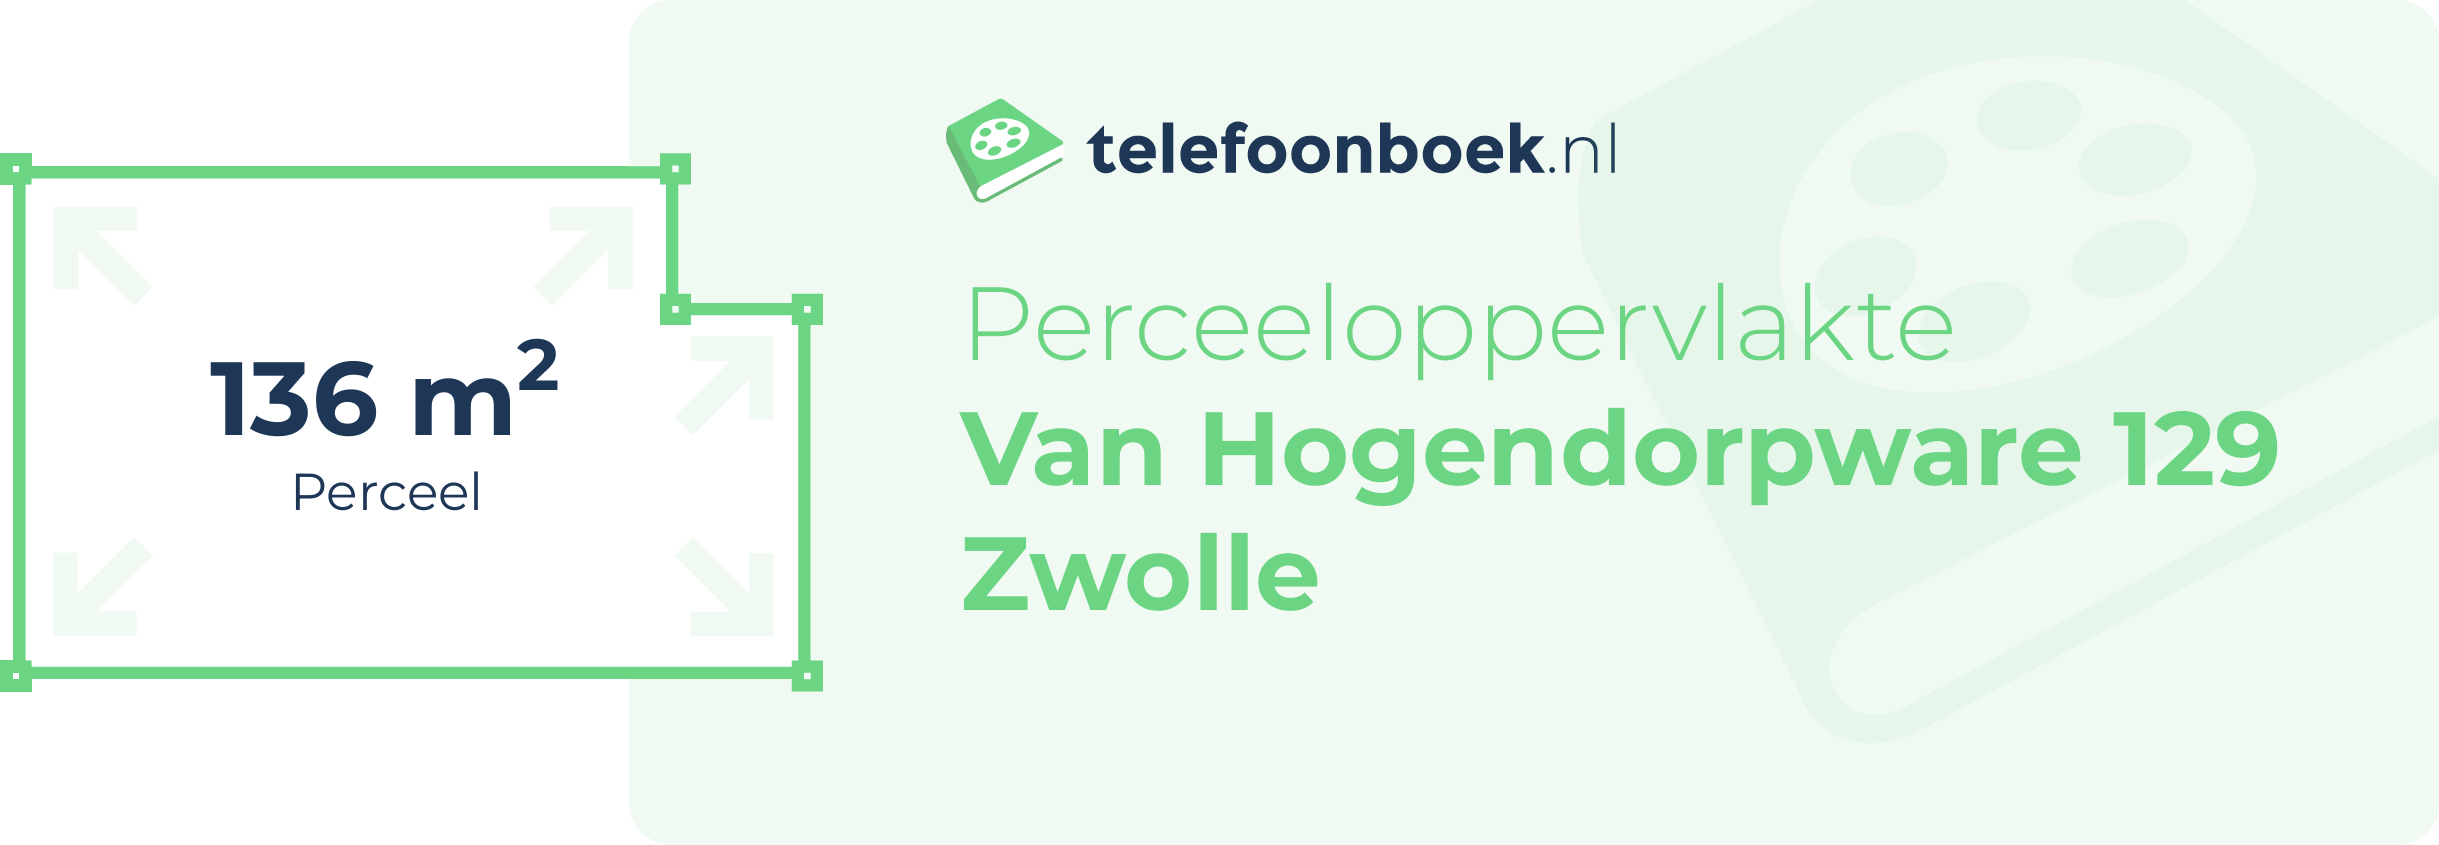 Perceeloppervlakte Van Hogendorpware 129 Zwolle